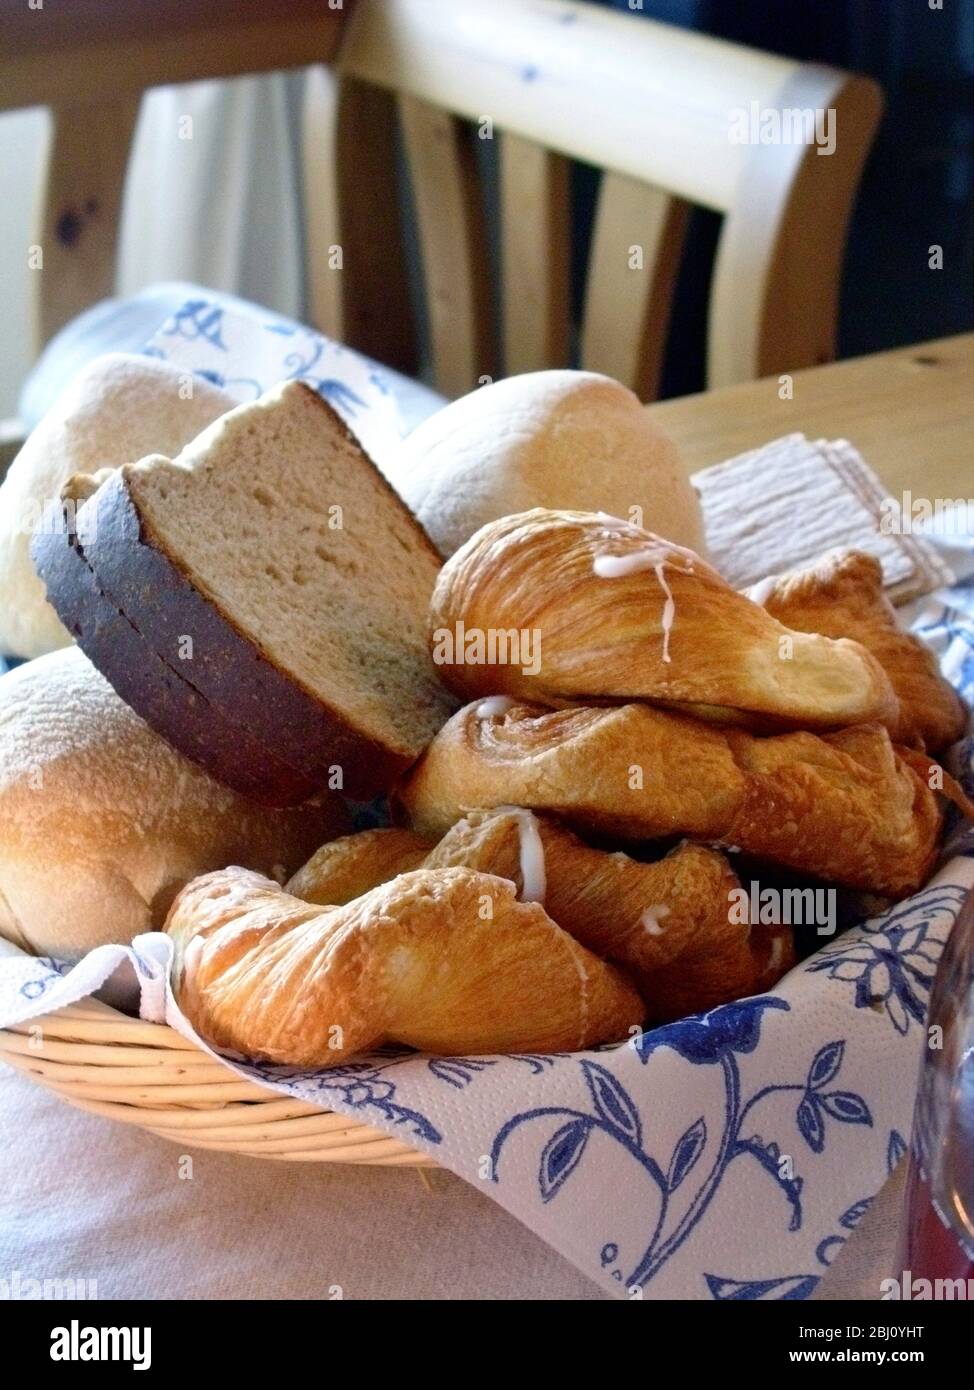 Eine Auswahl an verschiedenen Brotsorten und Gebäck im Korb auf dem Tisch. Schweden - Stockfoto